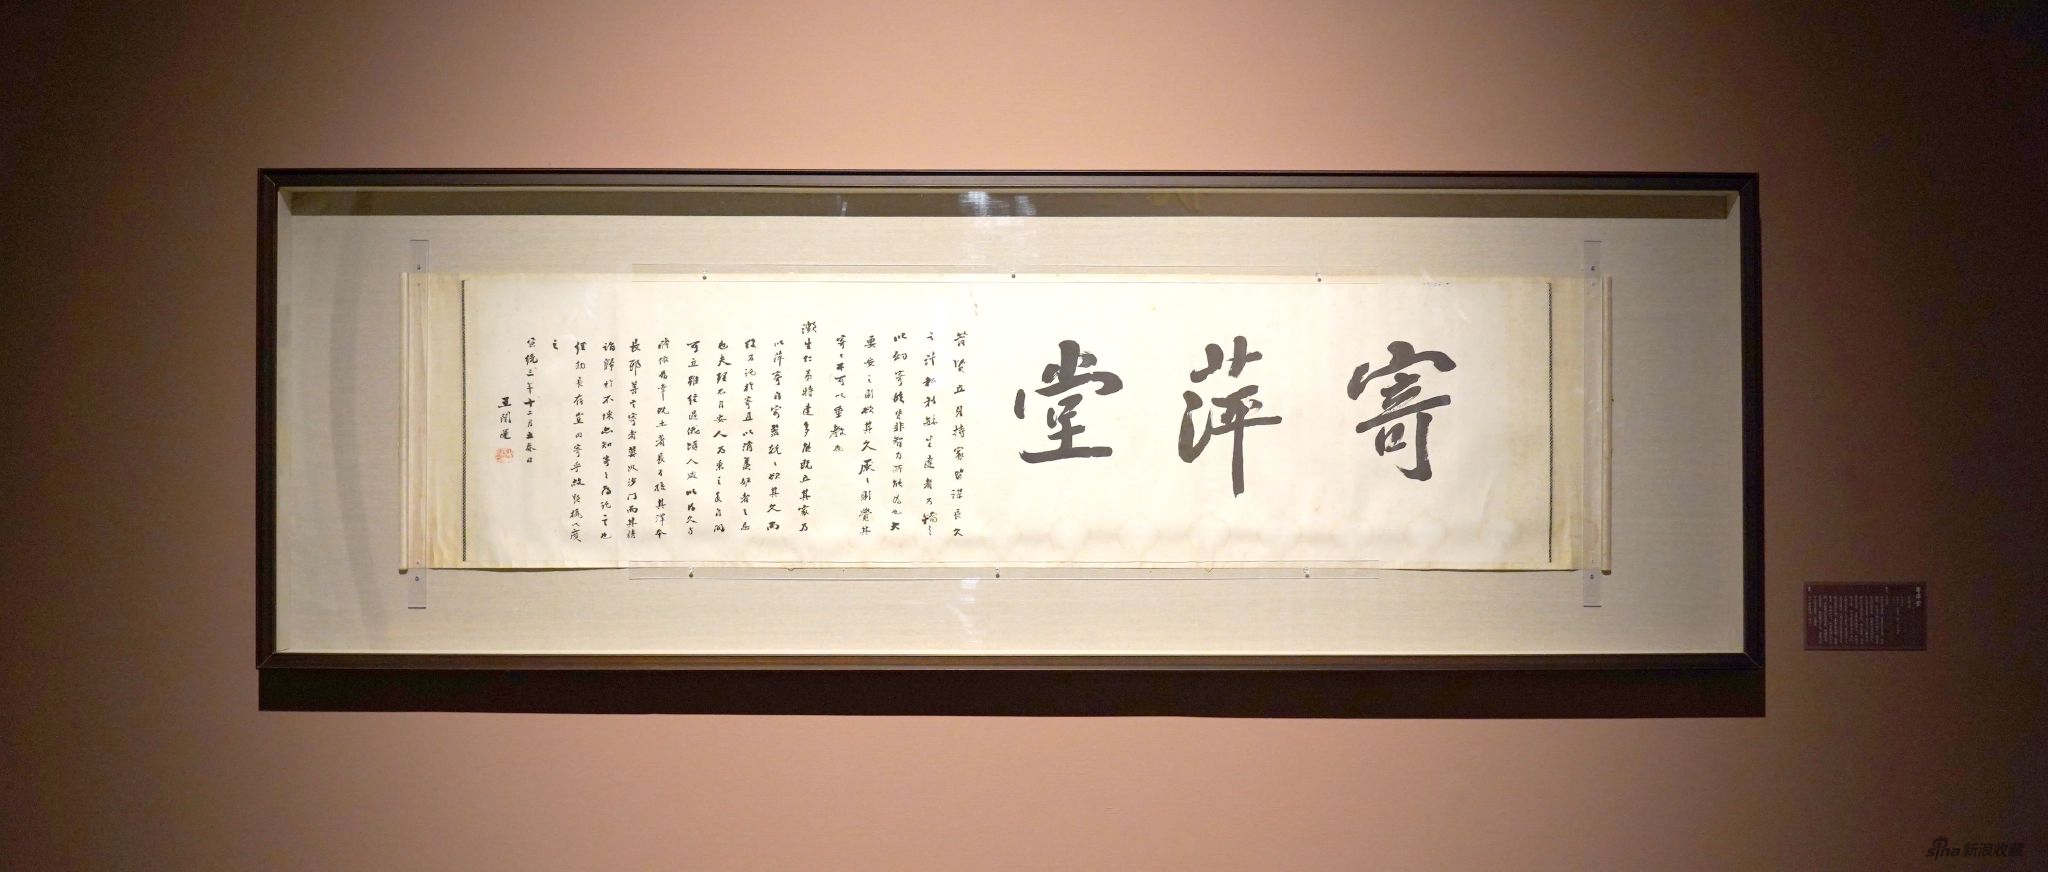 寄萍堂 王闿运 纸本墨笔 45.5cm×176cm 1911年